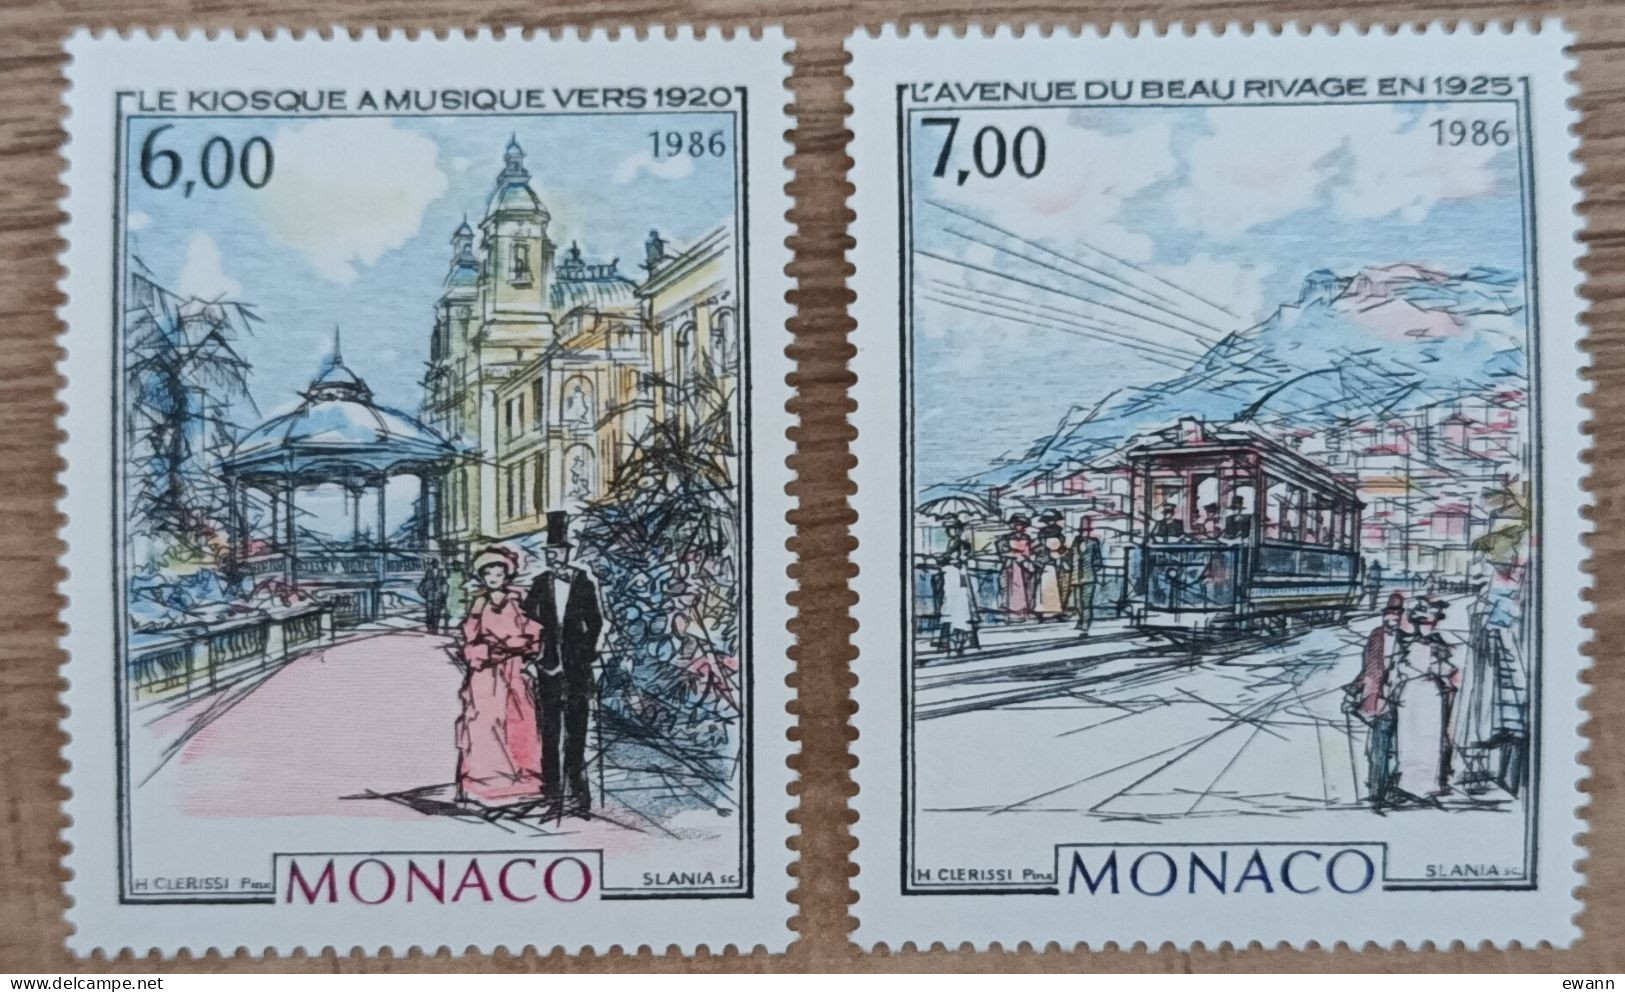 Monaco - YT N°1543, 1544 - Monaco à La Belle Epoque / Kiosque à Musique / Avenue Du Beau Rivage - 1986 - Neuf - Nuovi